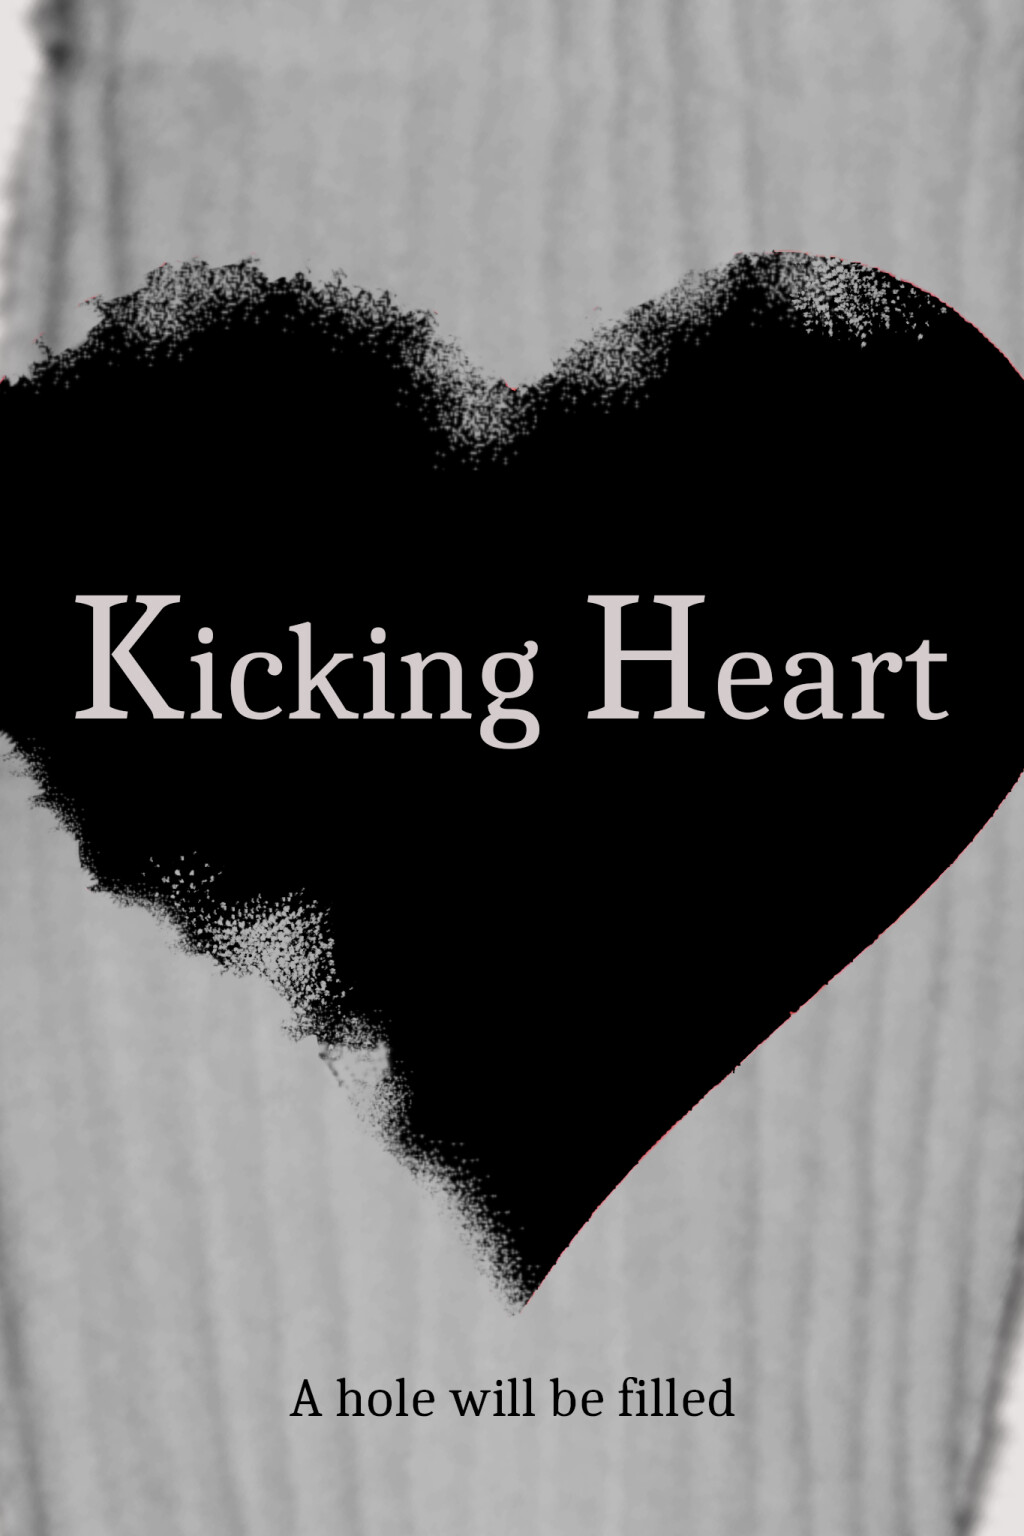 Filmposter for Kicking Heart